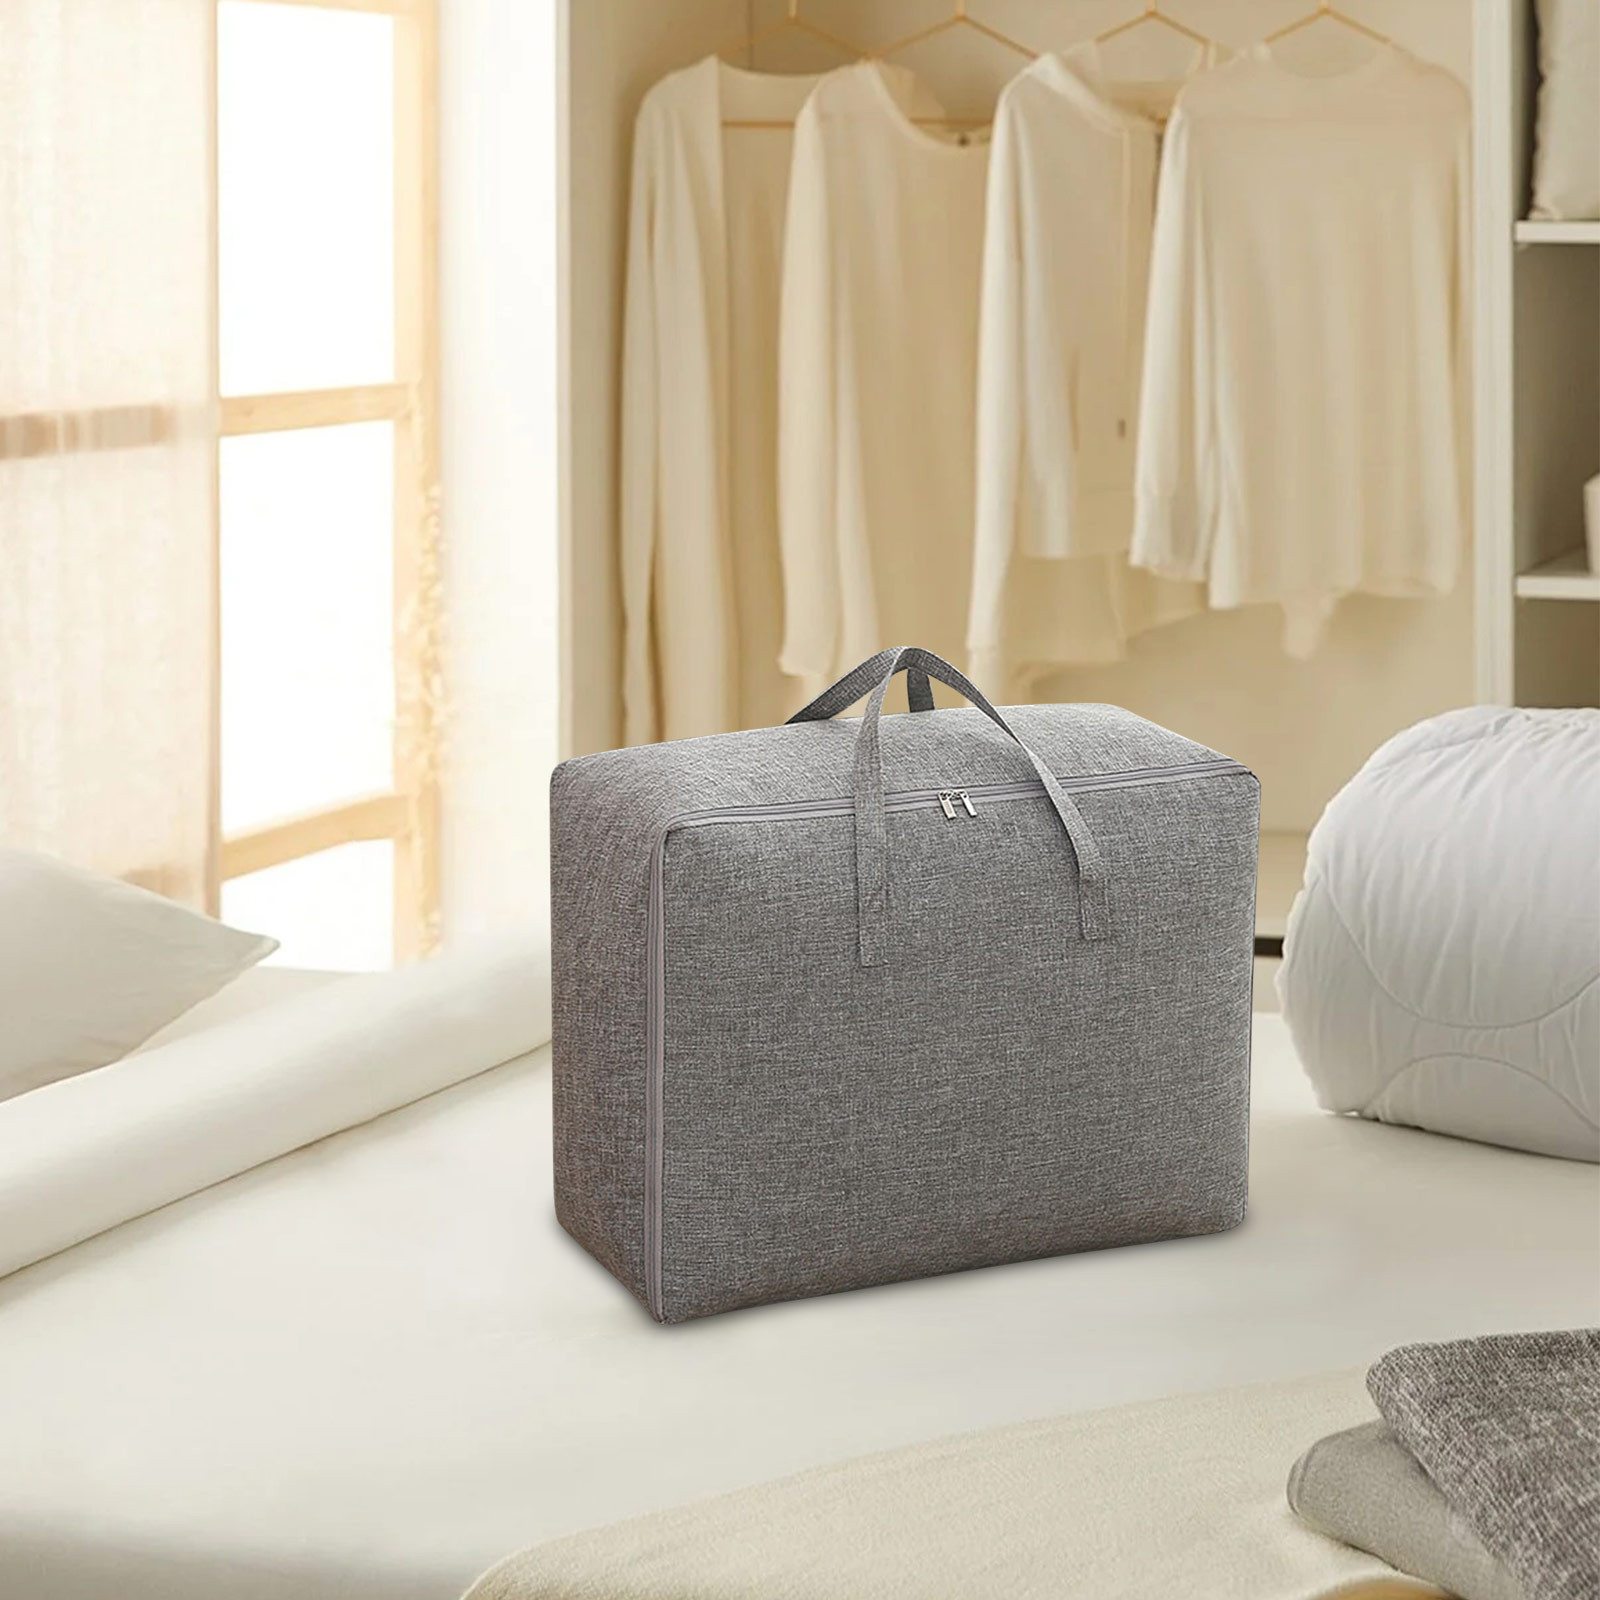 JGJJUGN Large Cotton-Linen Storage Bag for Bedding, Clothing, and ...